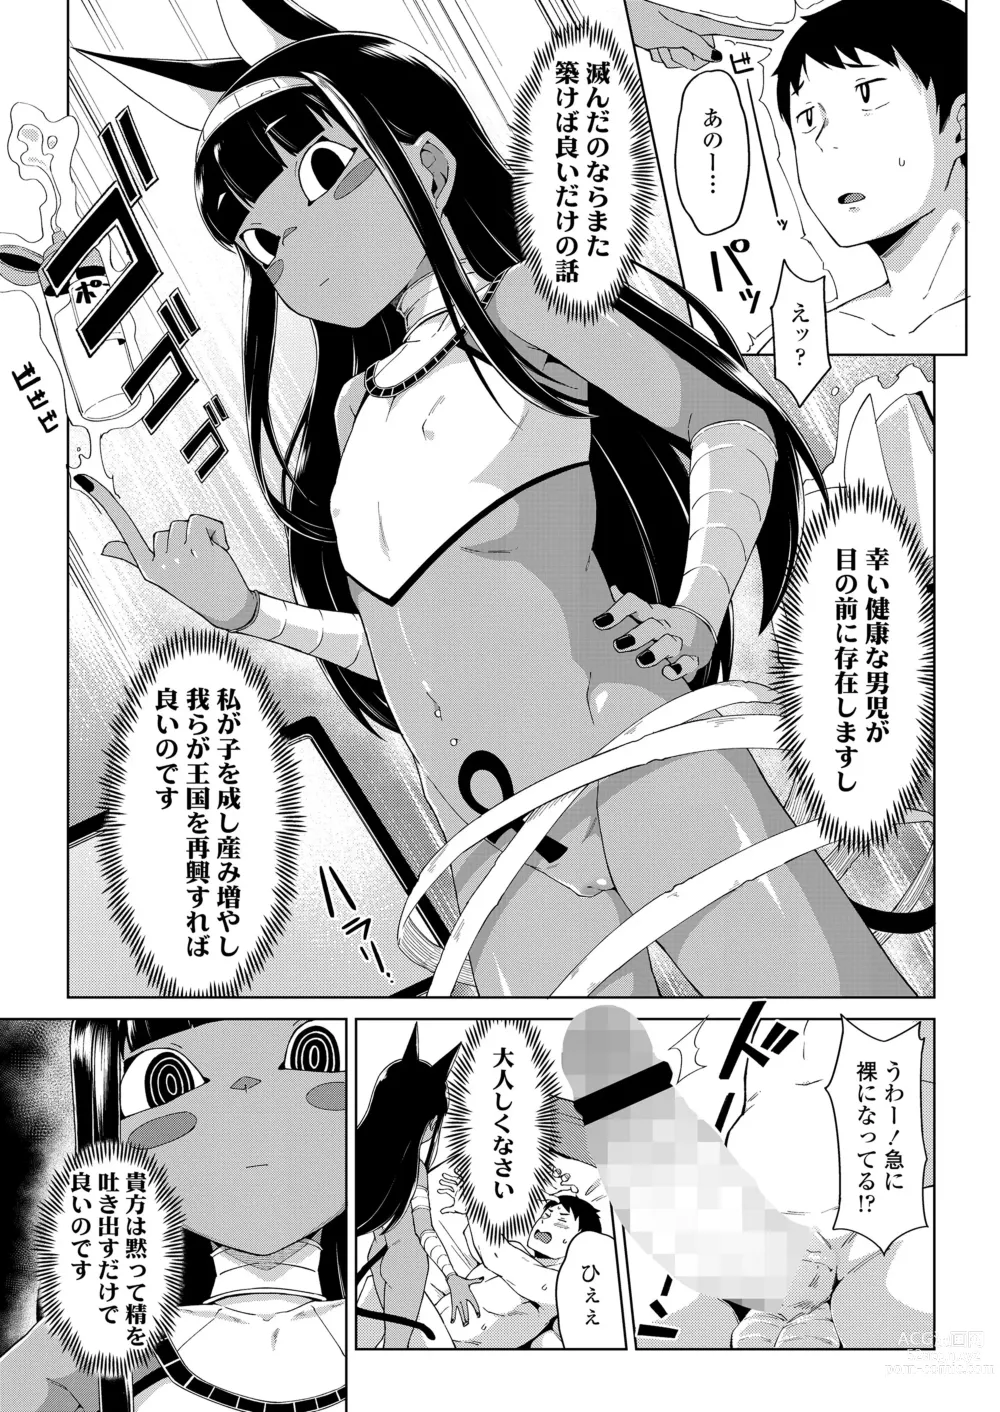 Page 7 of manga Towako Oboro Emaki 13